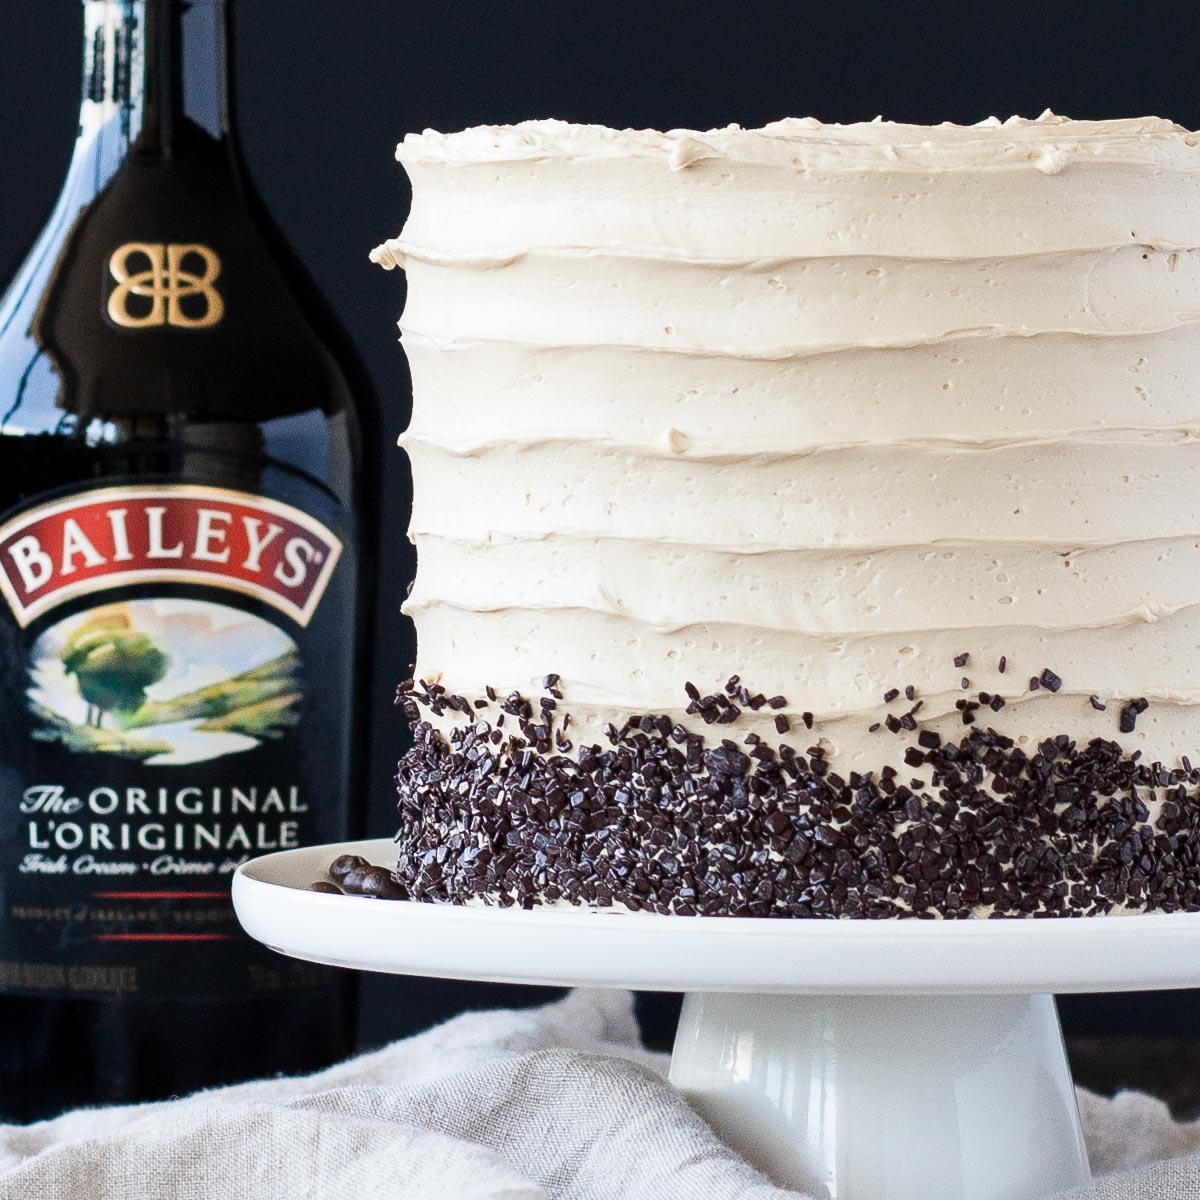 Coffee & Baileys Layer Cake